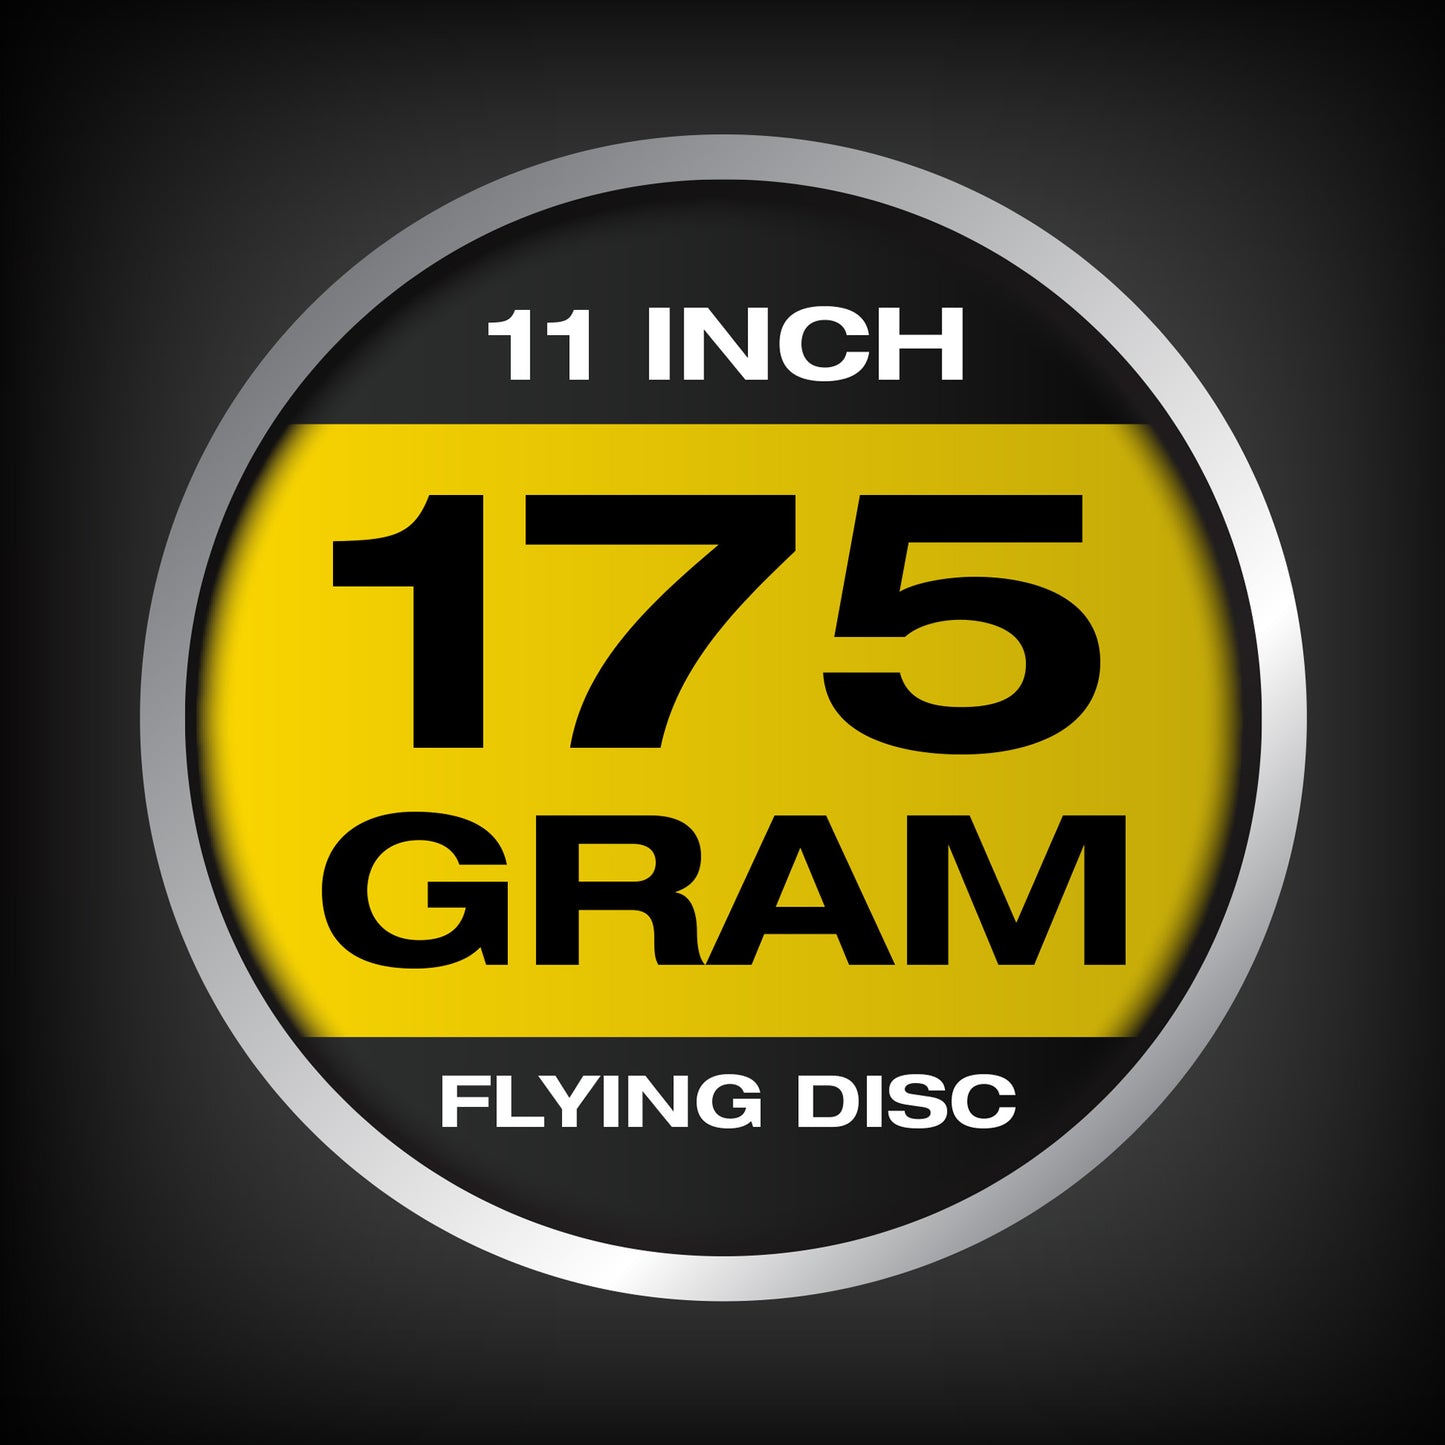 Kan Jam 175g  Light-Up Flying Disc